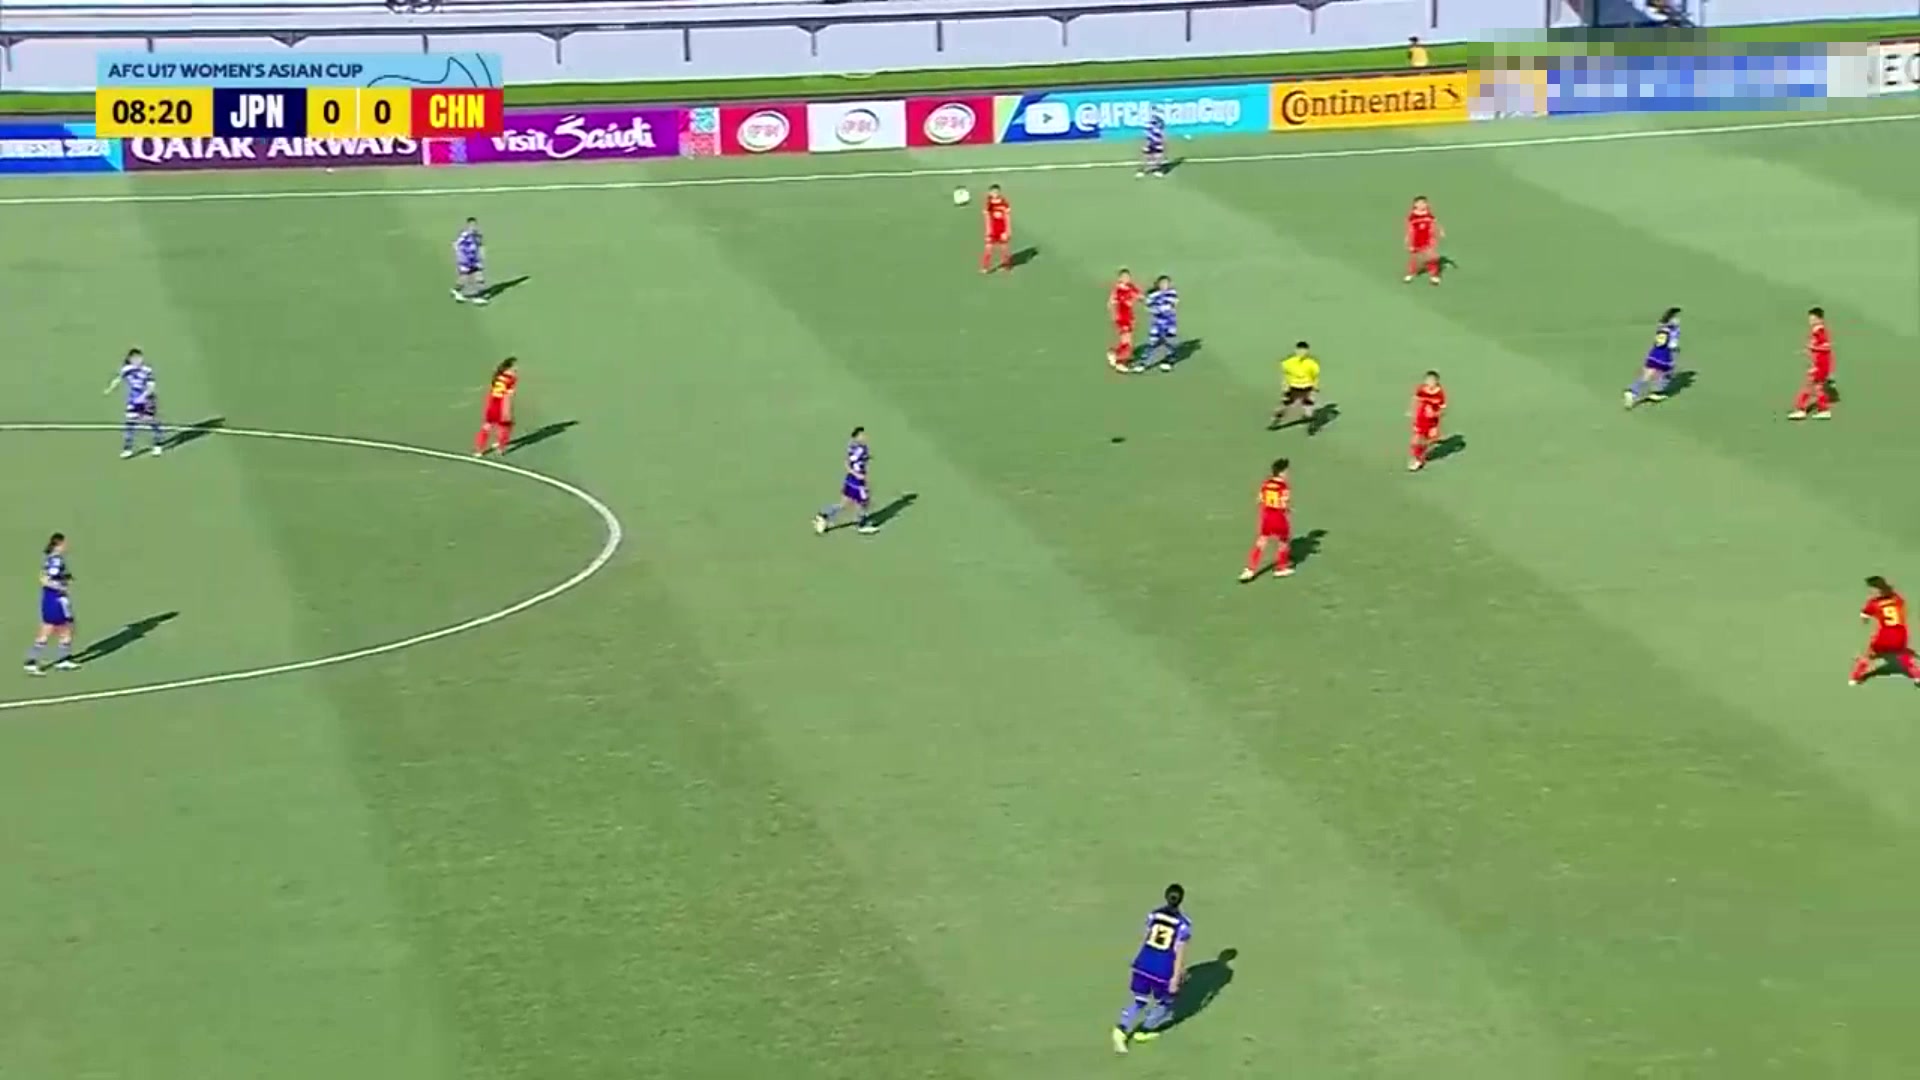 【集锦】U17女足亚洲杯中国04日本遭惨败第二出线将对阵朝鲜